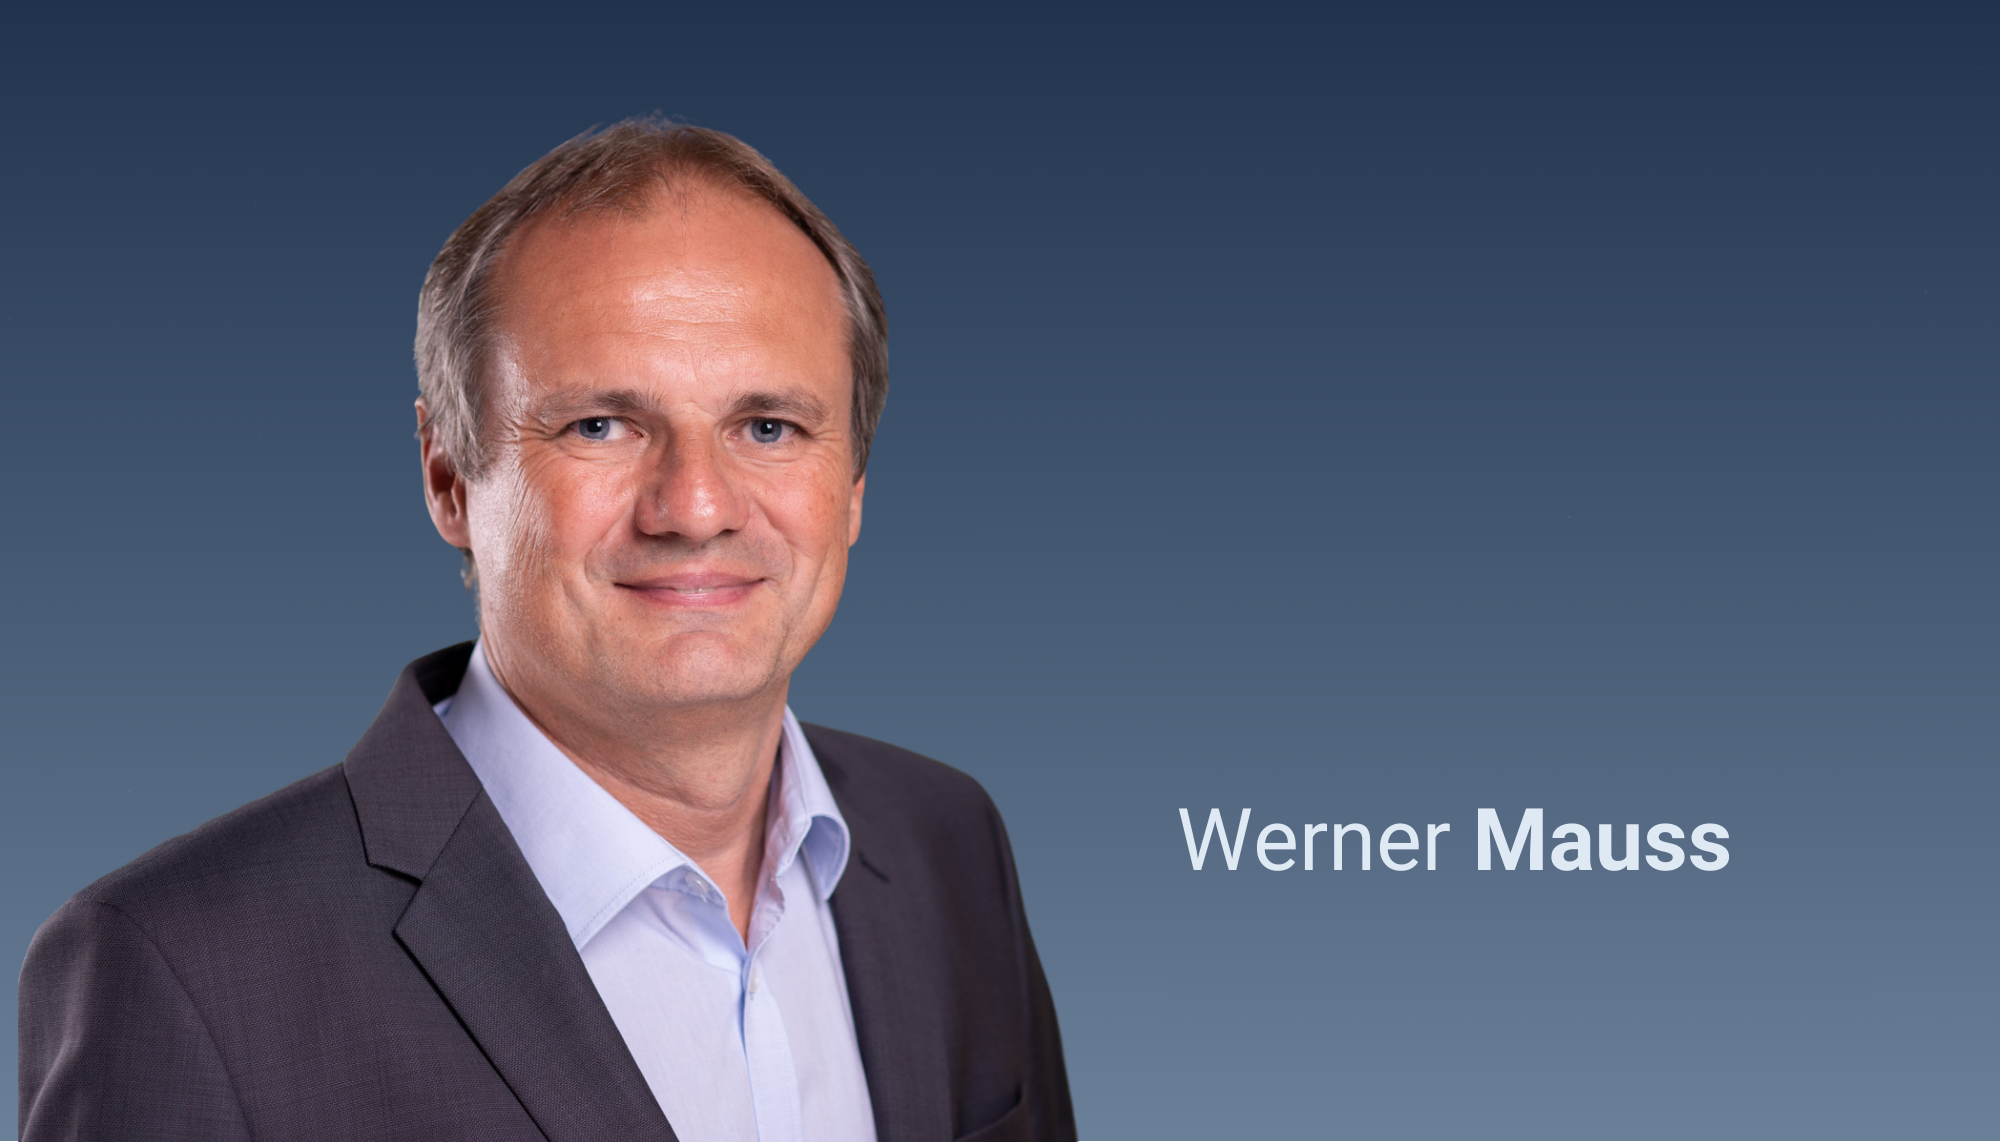 Werner Mauss